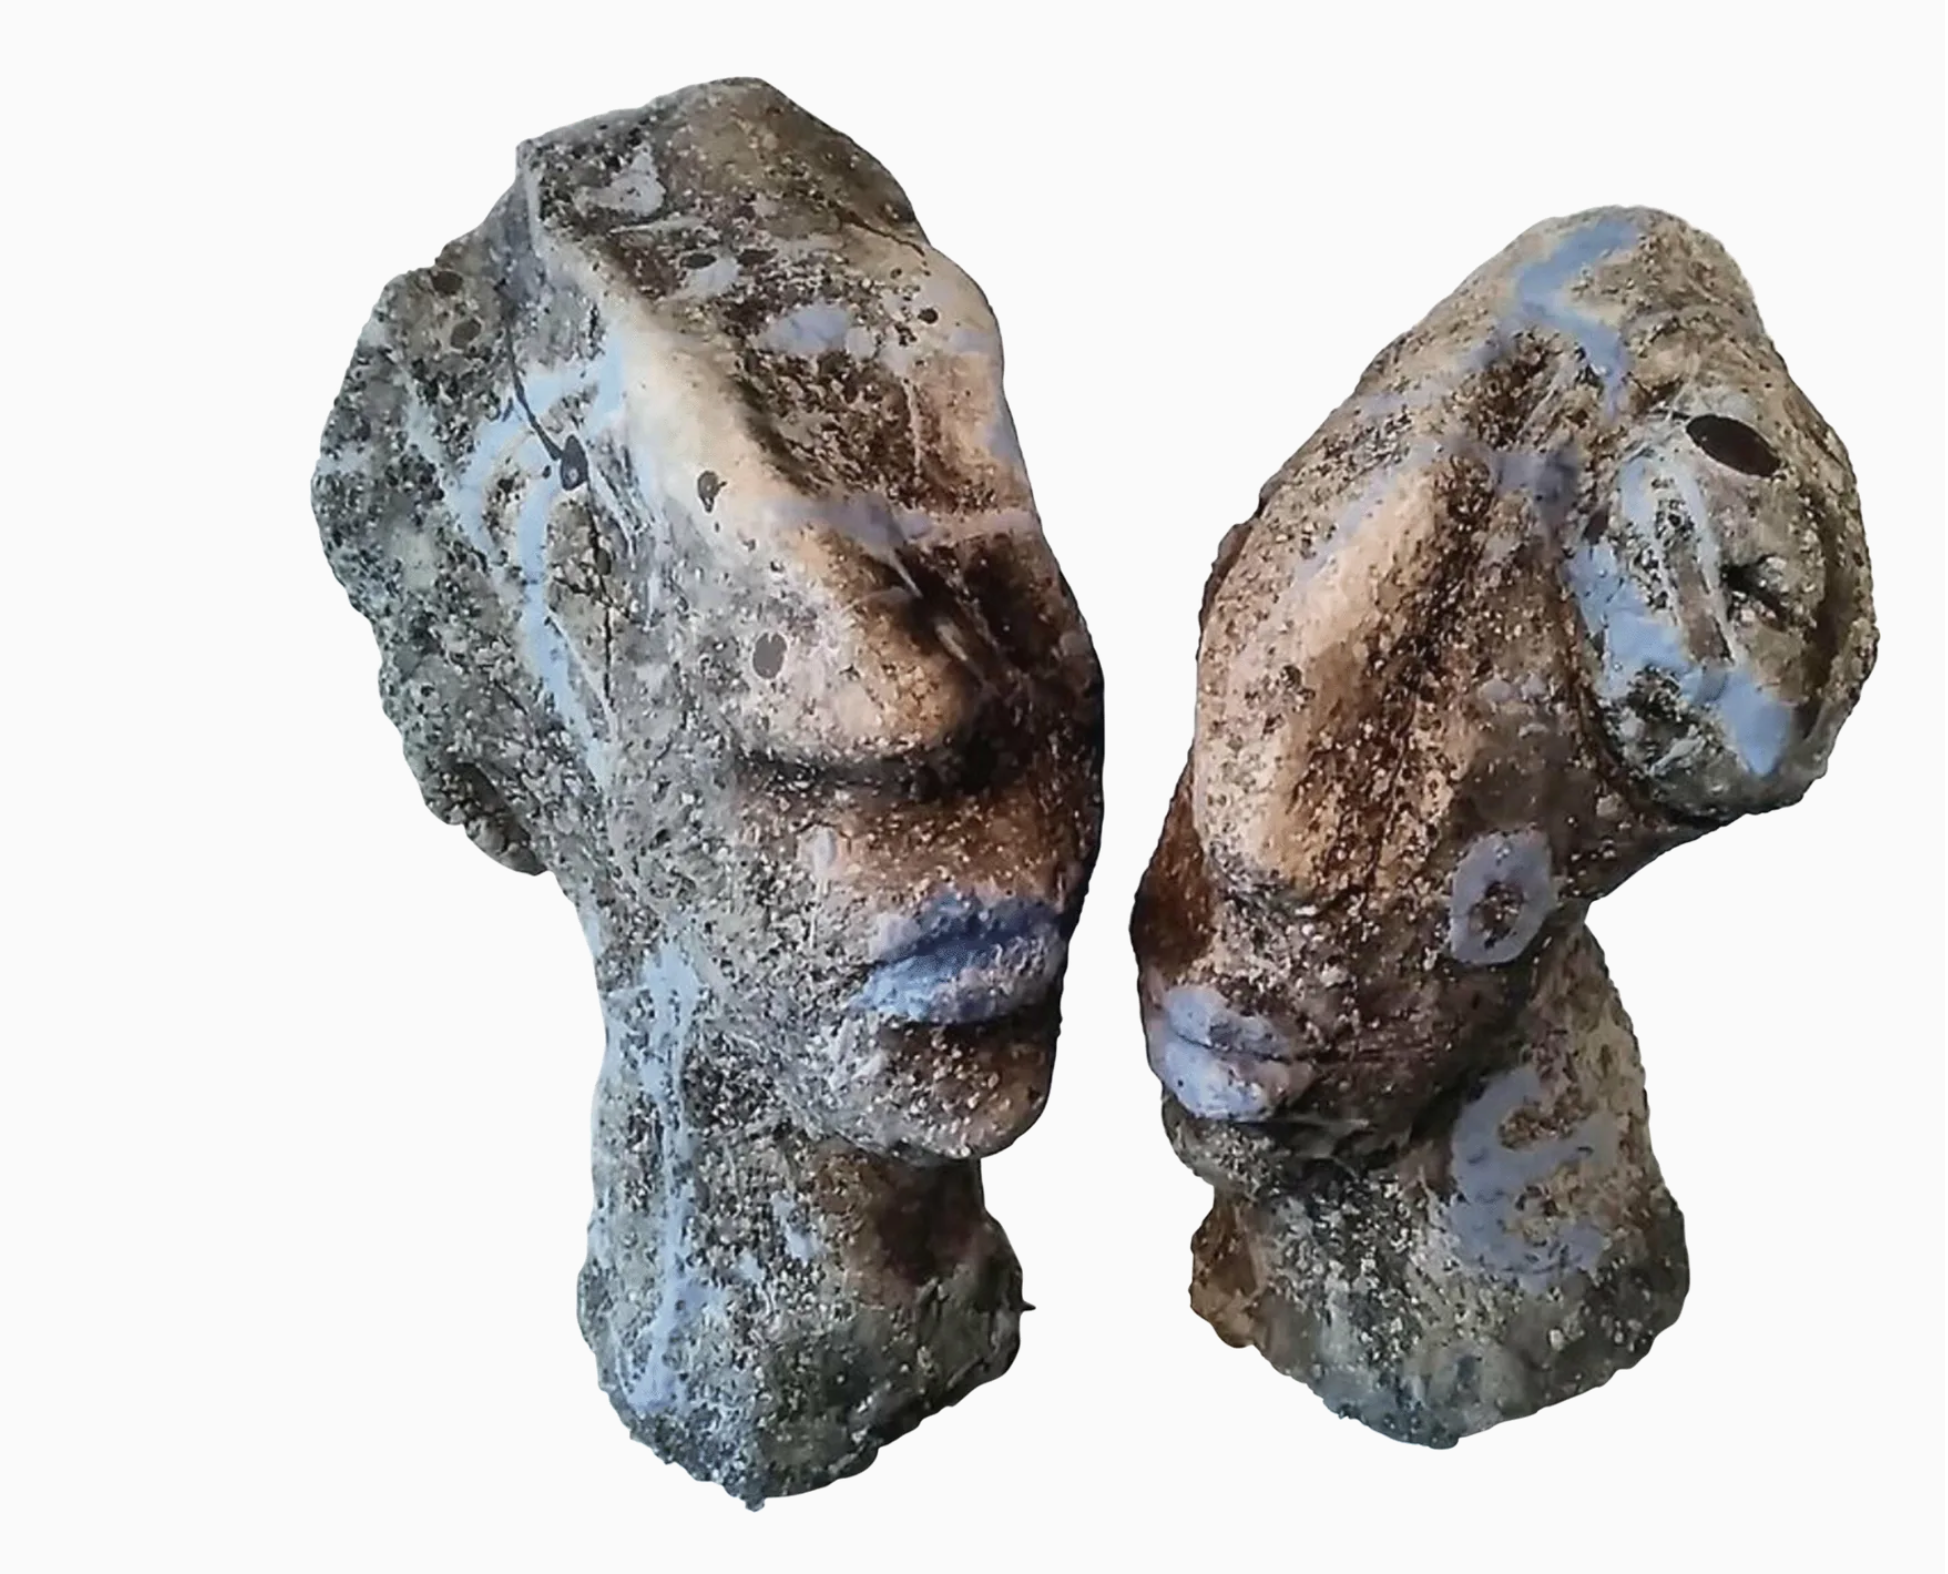 伊洛娜-施密特的 "我们属于一起 "展示了一对用石器块造型的人物，在烧制后用雕刻剂和铜版画处理。